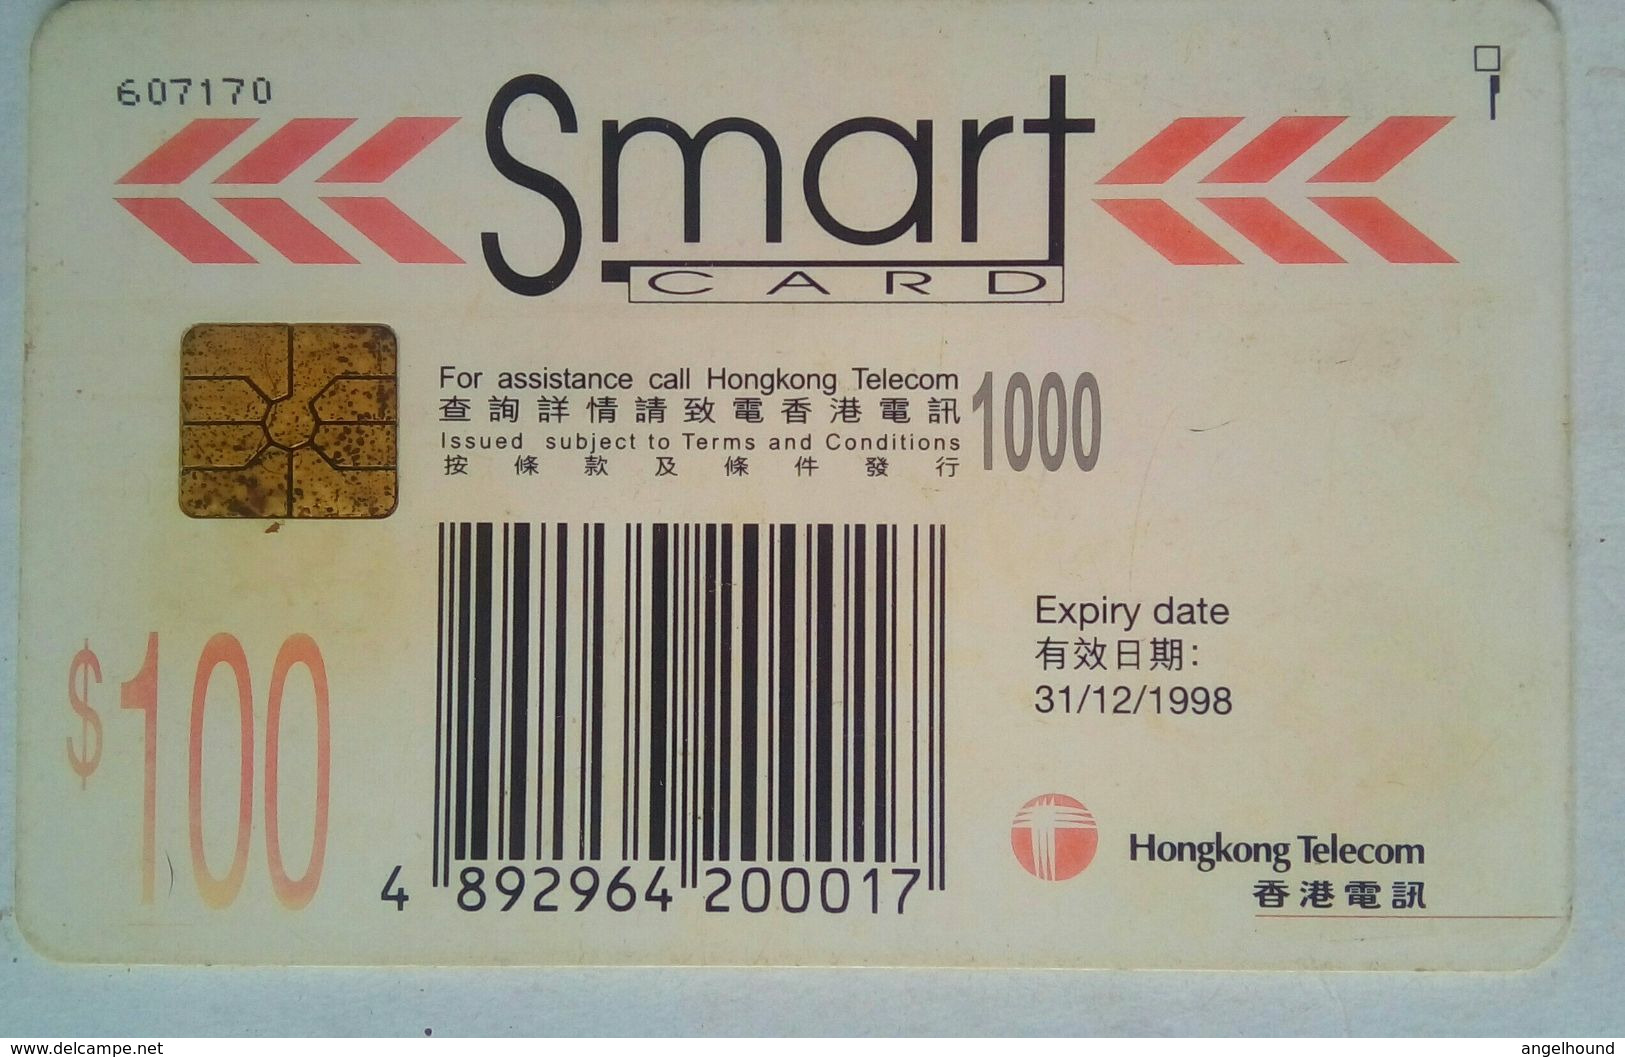 $100 Smart Chip Card - Hongkong